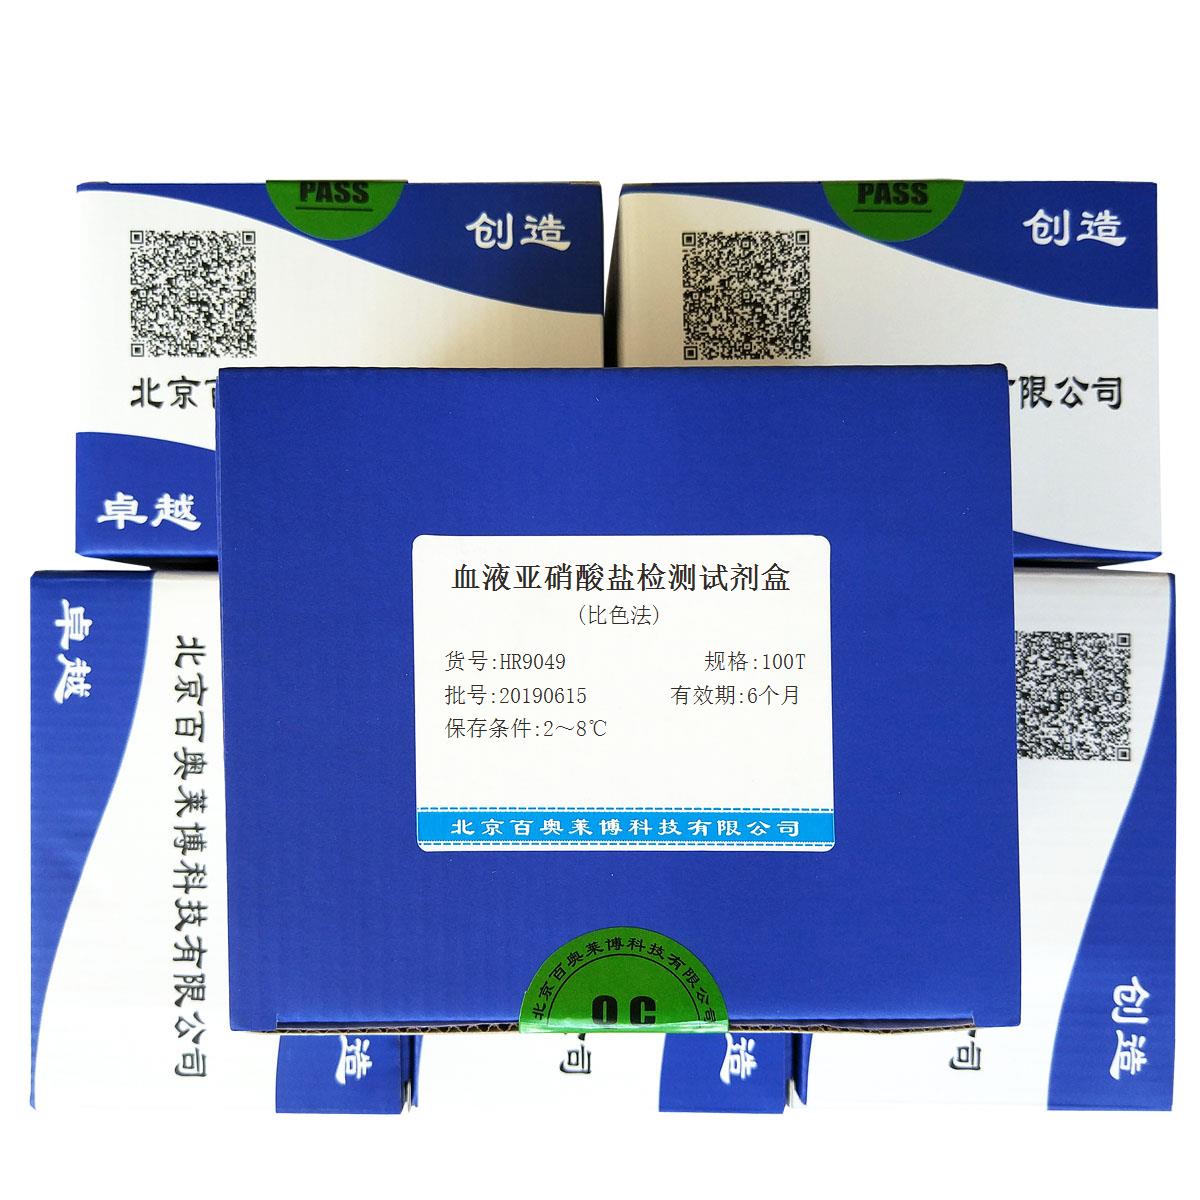 血液亚硝酸盐检测试剂盒(比色法)北京现货